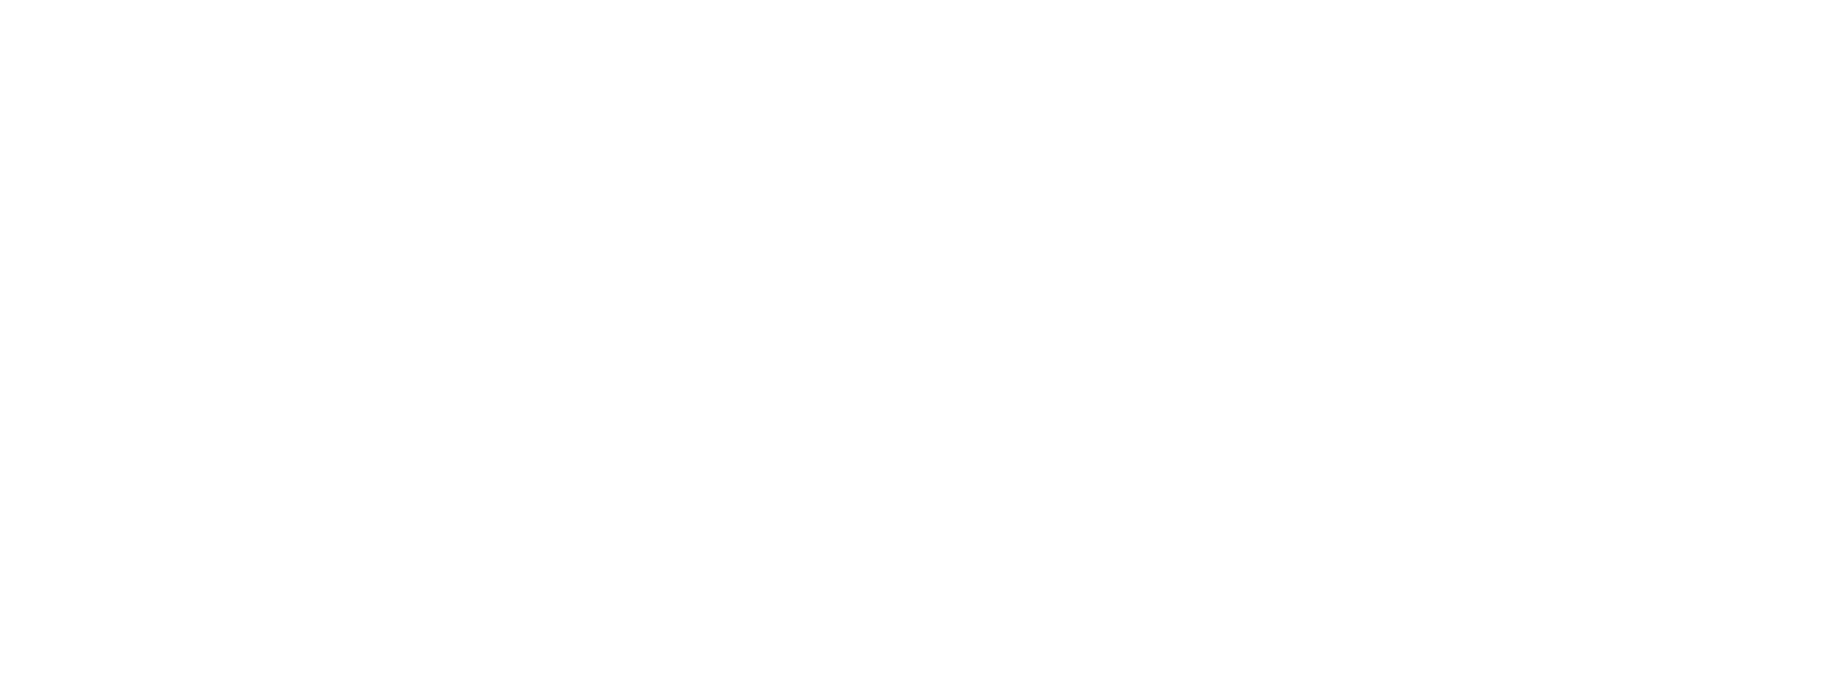 3000.1 - SickKids